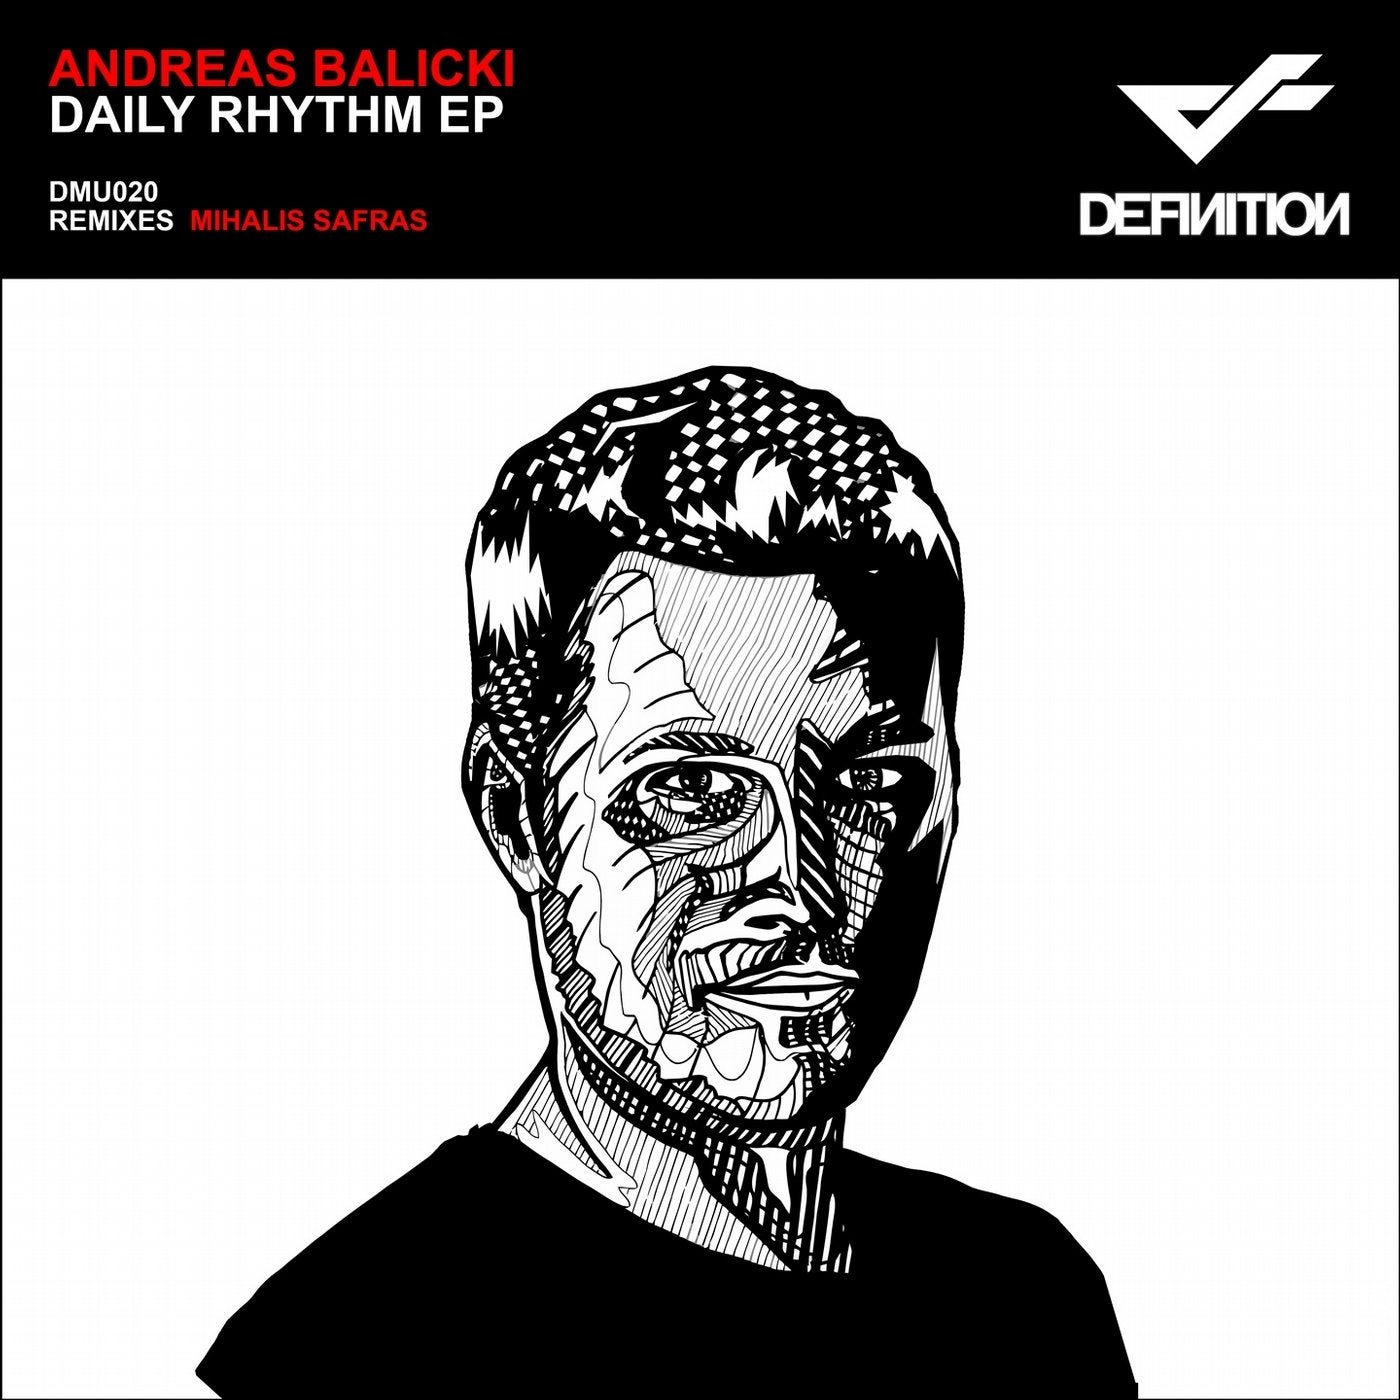 Daily Rhythm EP